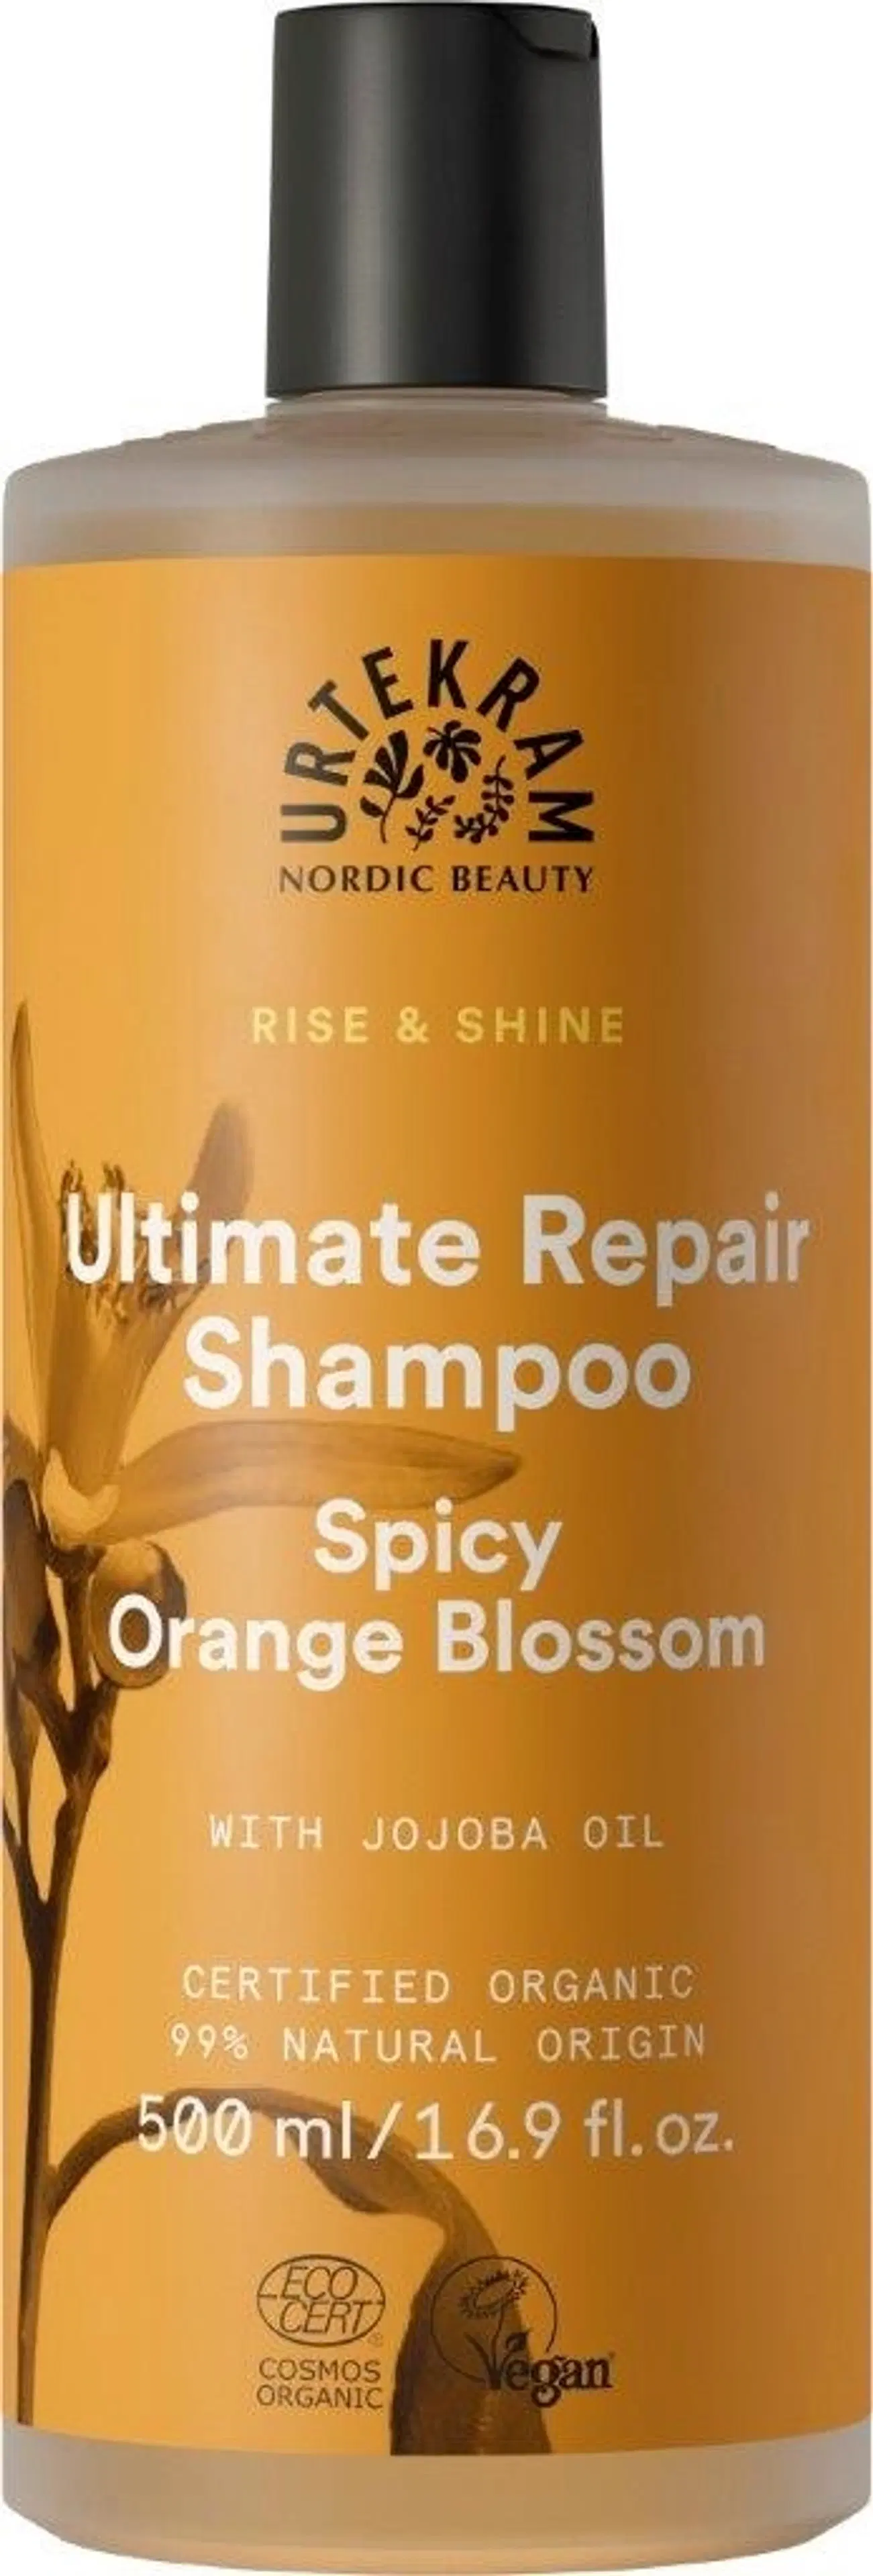 Urtekram Luomu Spicy Orange Blossom Shampoo 500ml